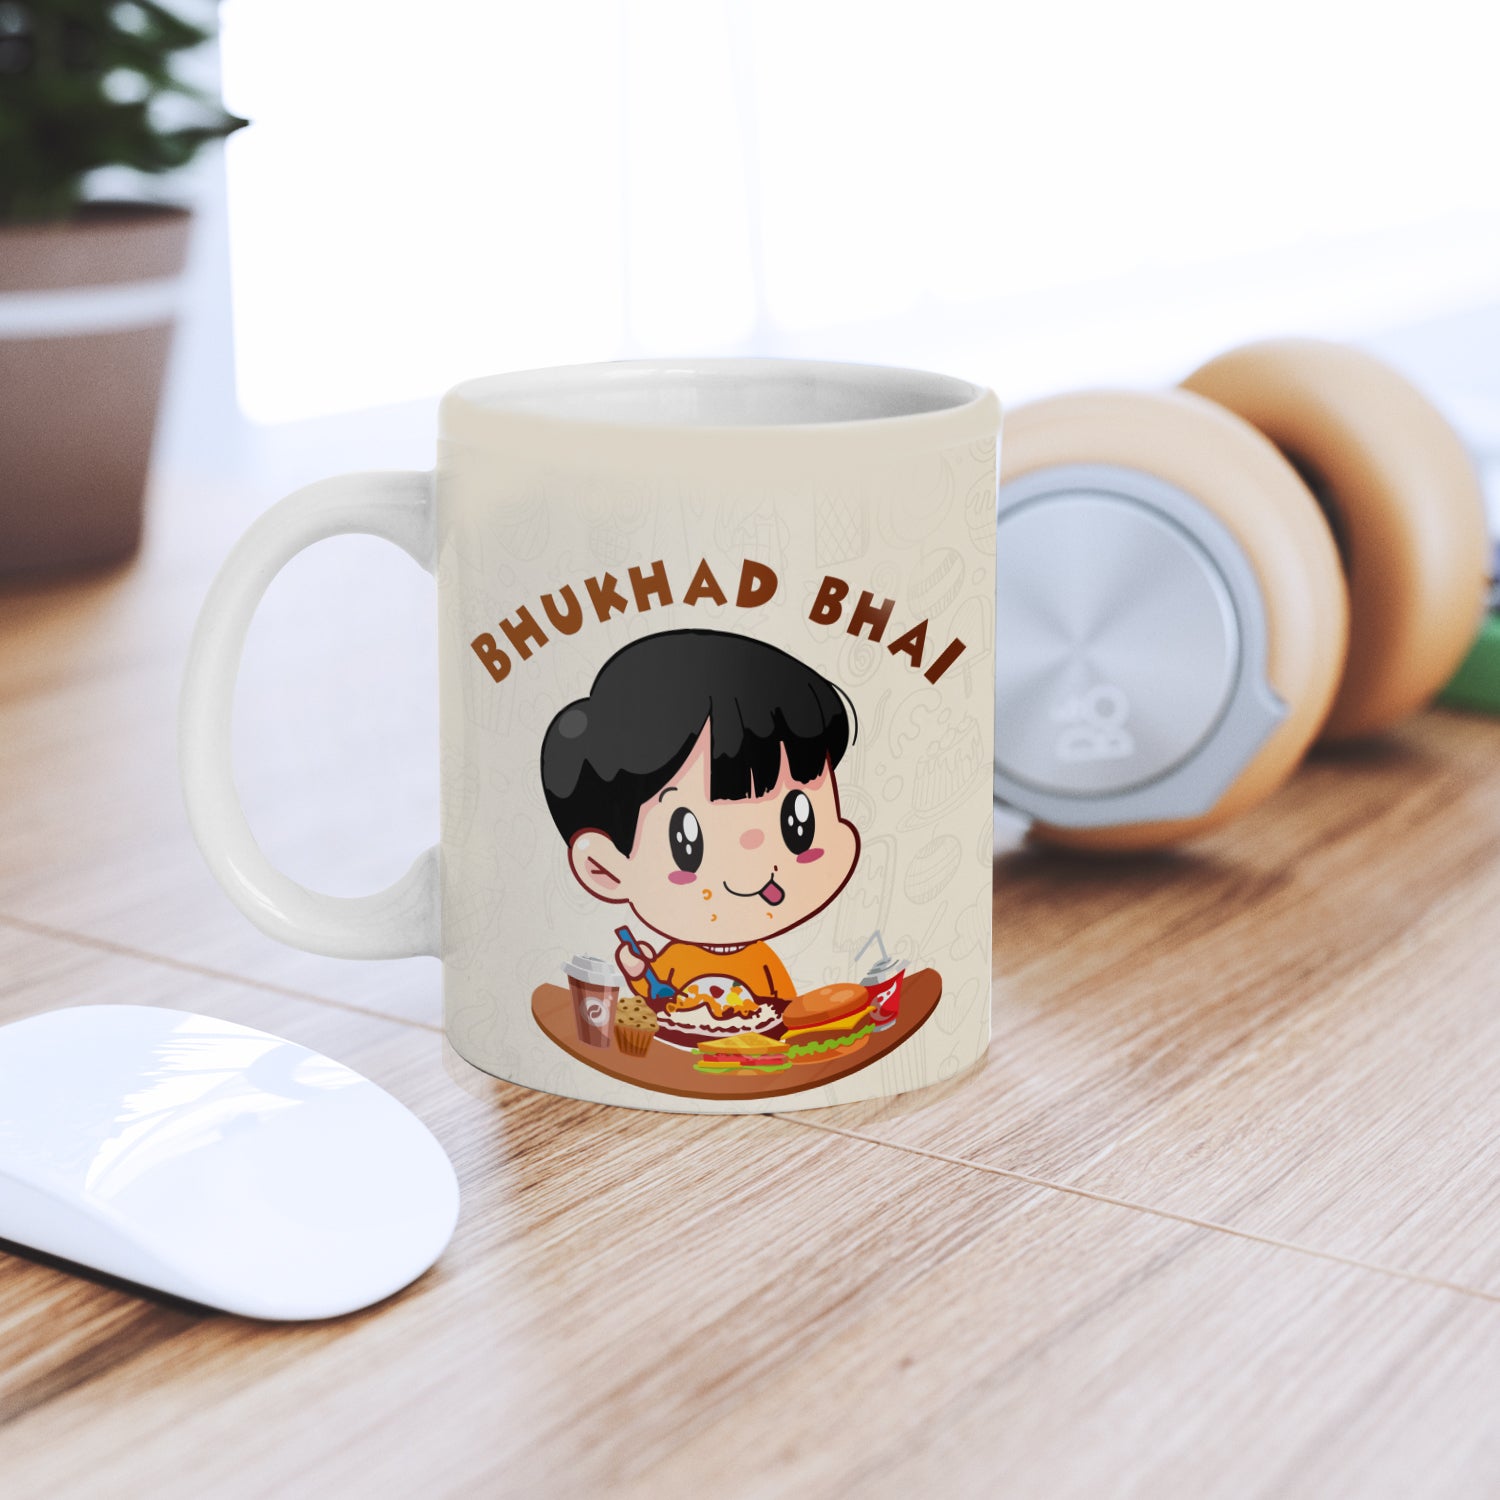 "Bhukhad Bhai" Brother Ceramic Coffee/Tea Mug